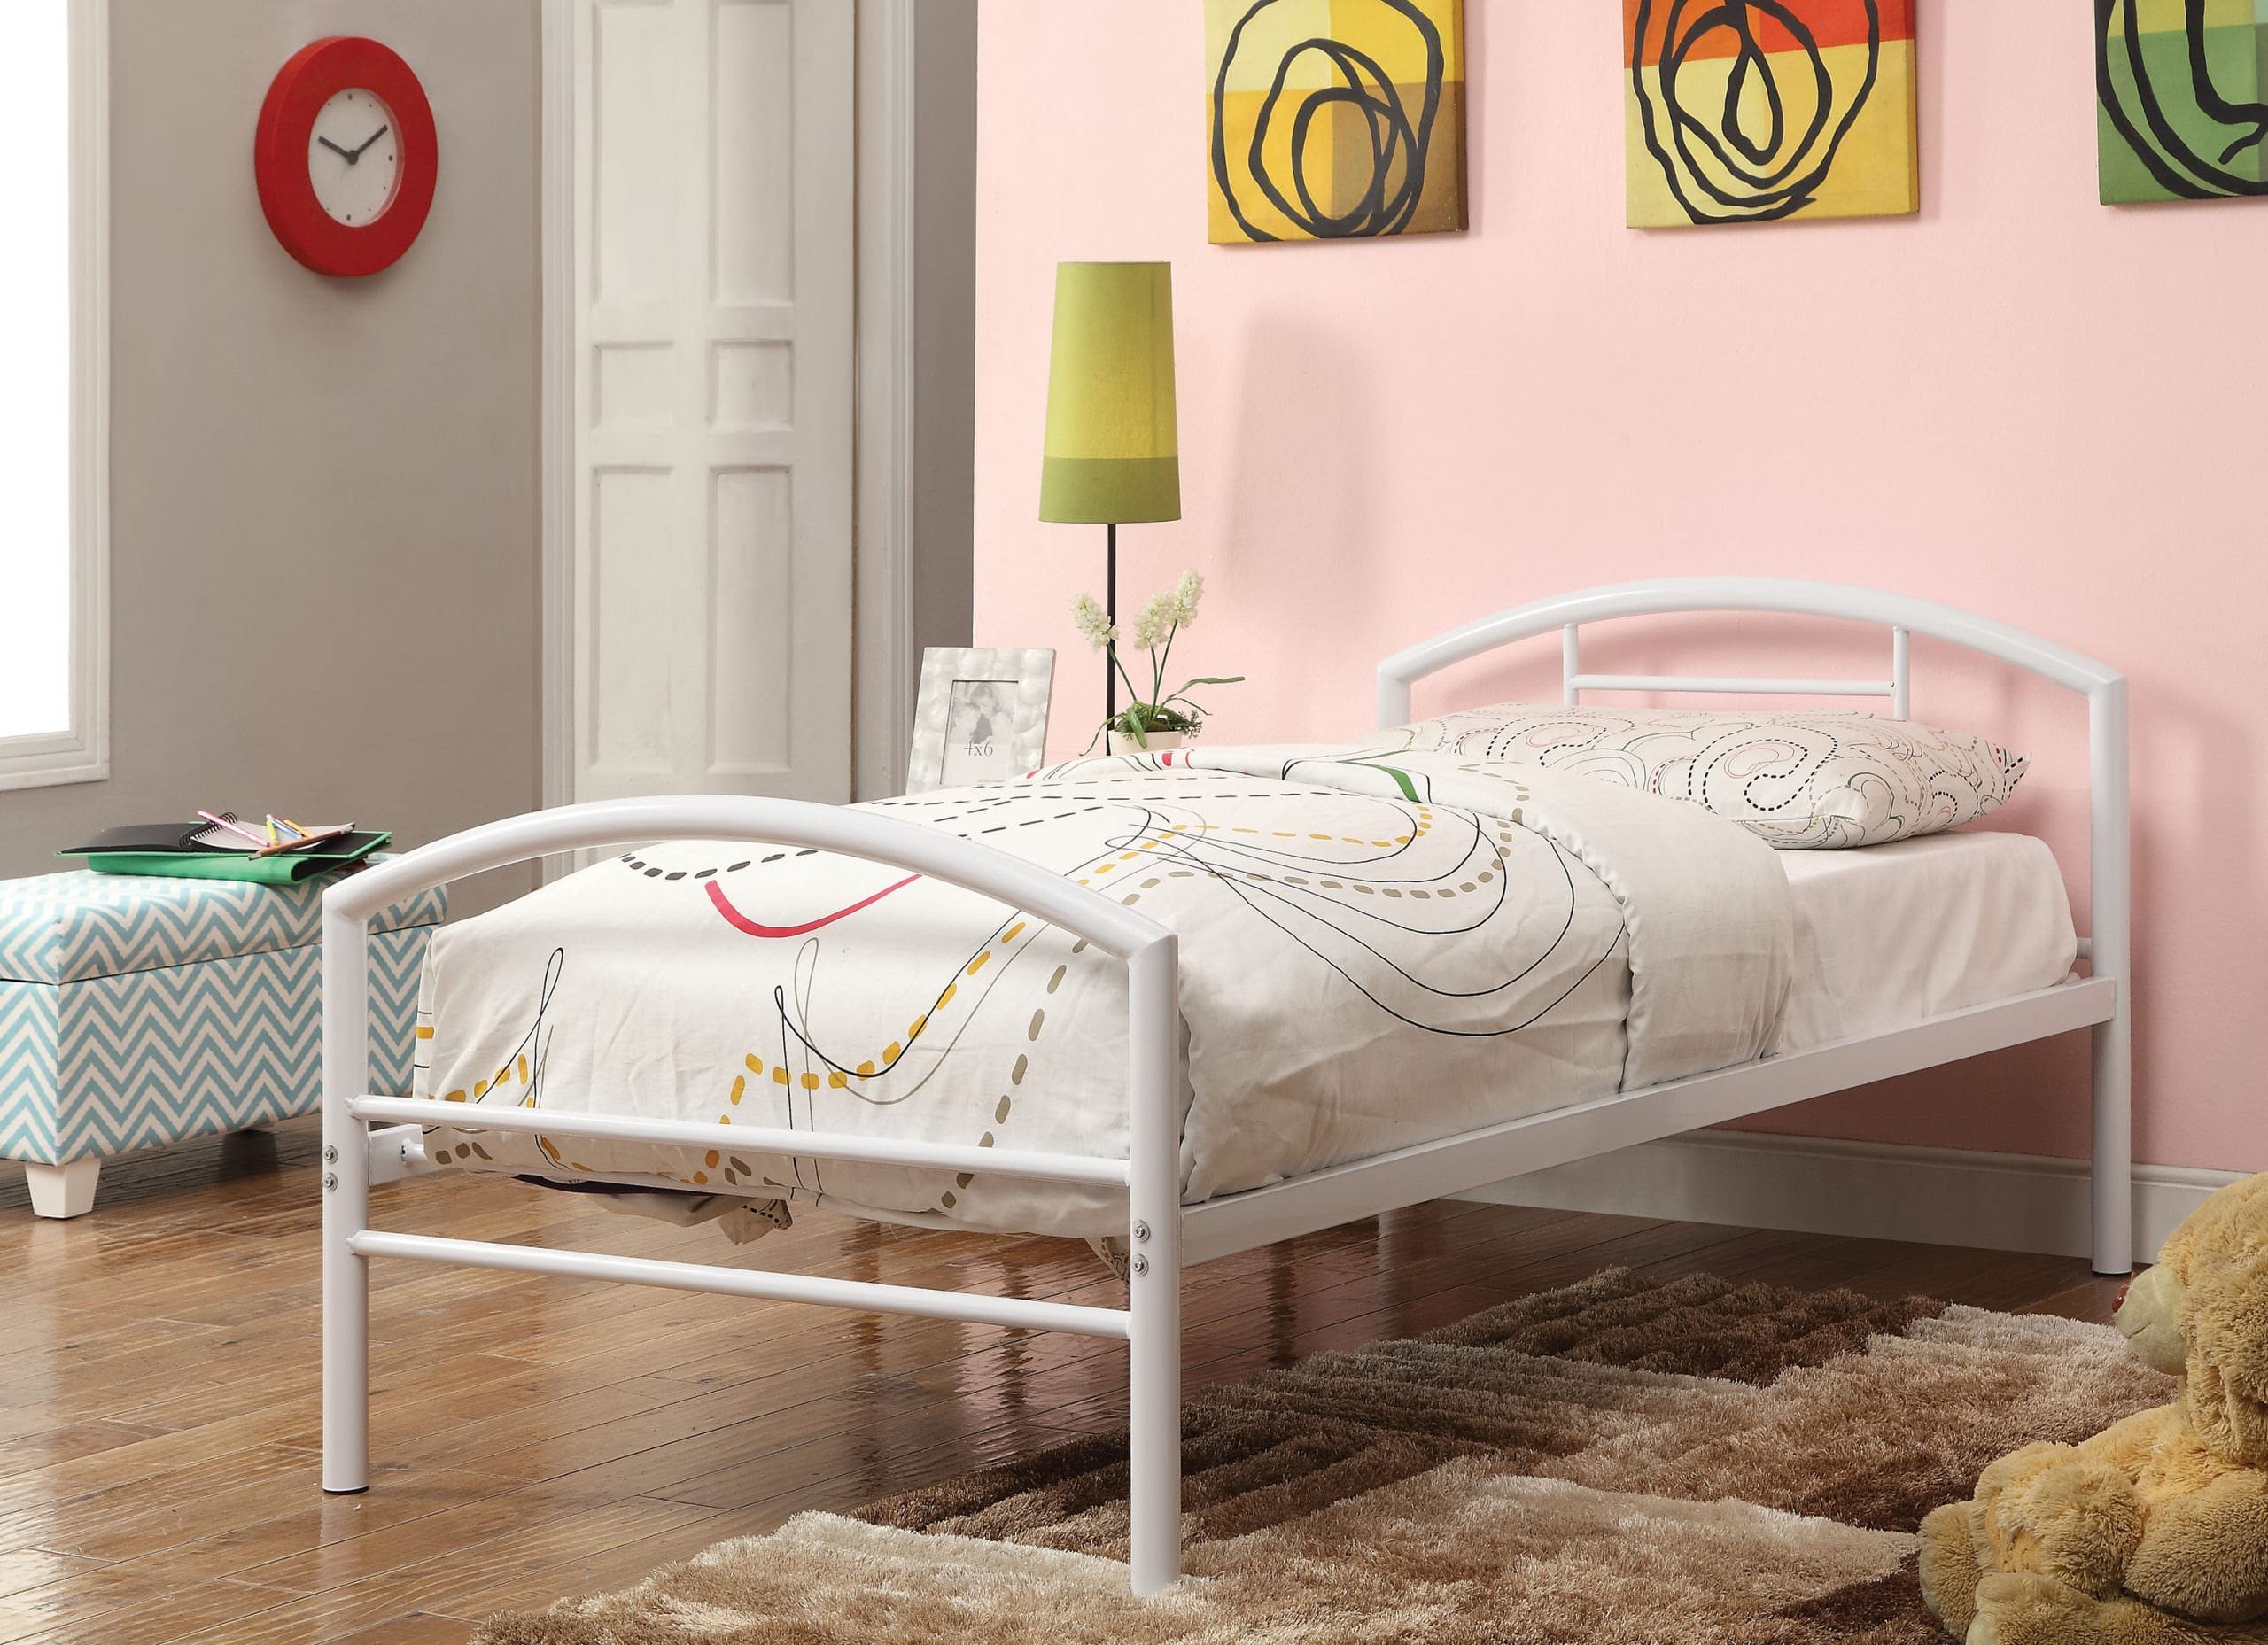 Giường ngủ đơn bằng sắt gọn nhẹ màu trắng thanh lịch, thích hợp bố trí cho phòng bạn gái